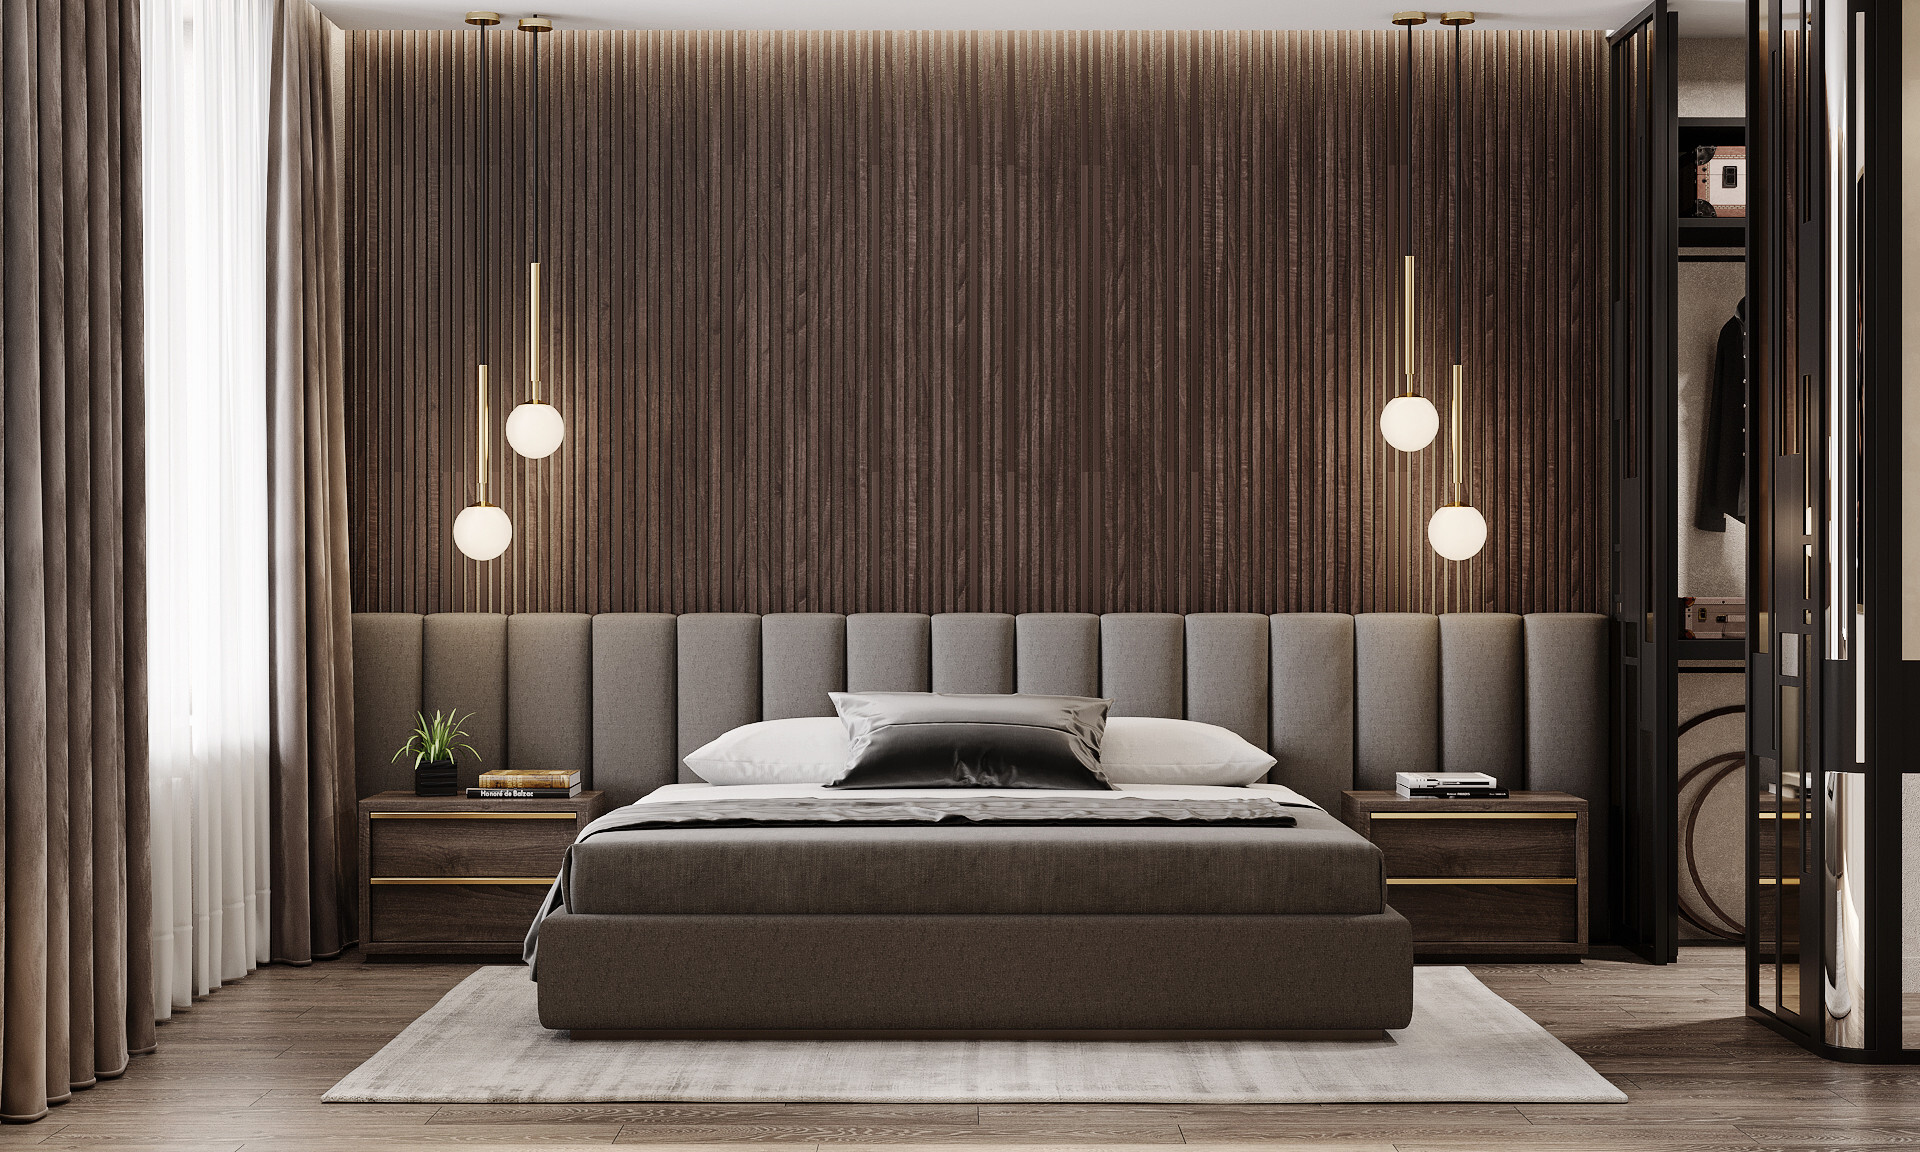 Интерьер гостиной с бра над кроватью, подсветкой настенной и светильниками над кроватью в современном стиле